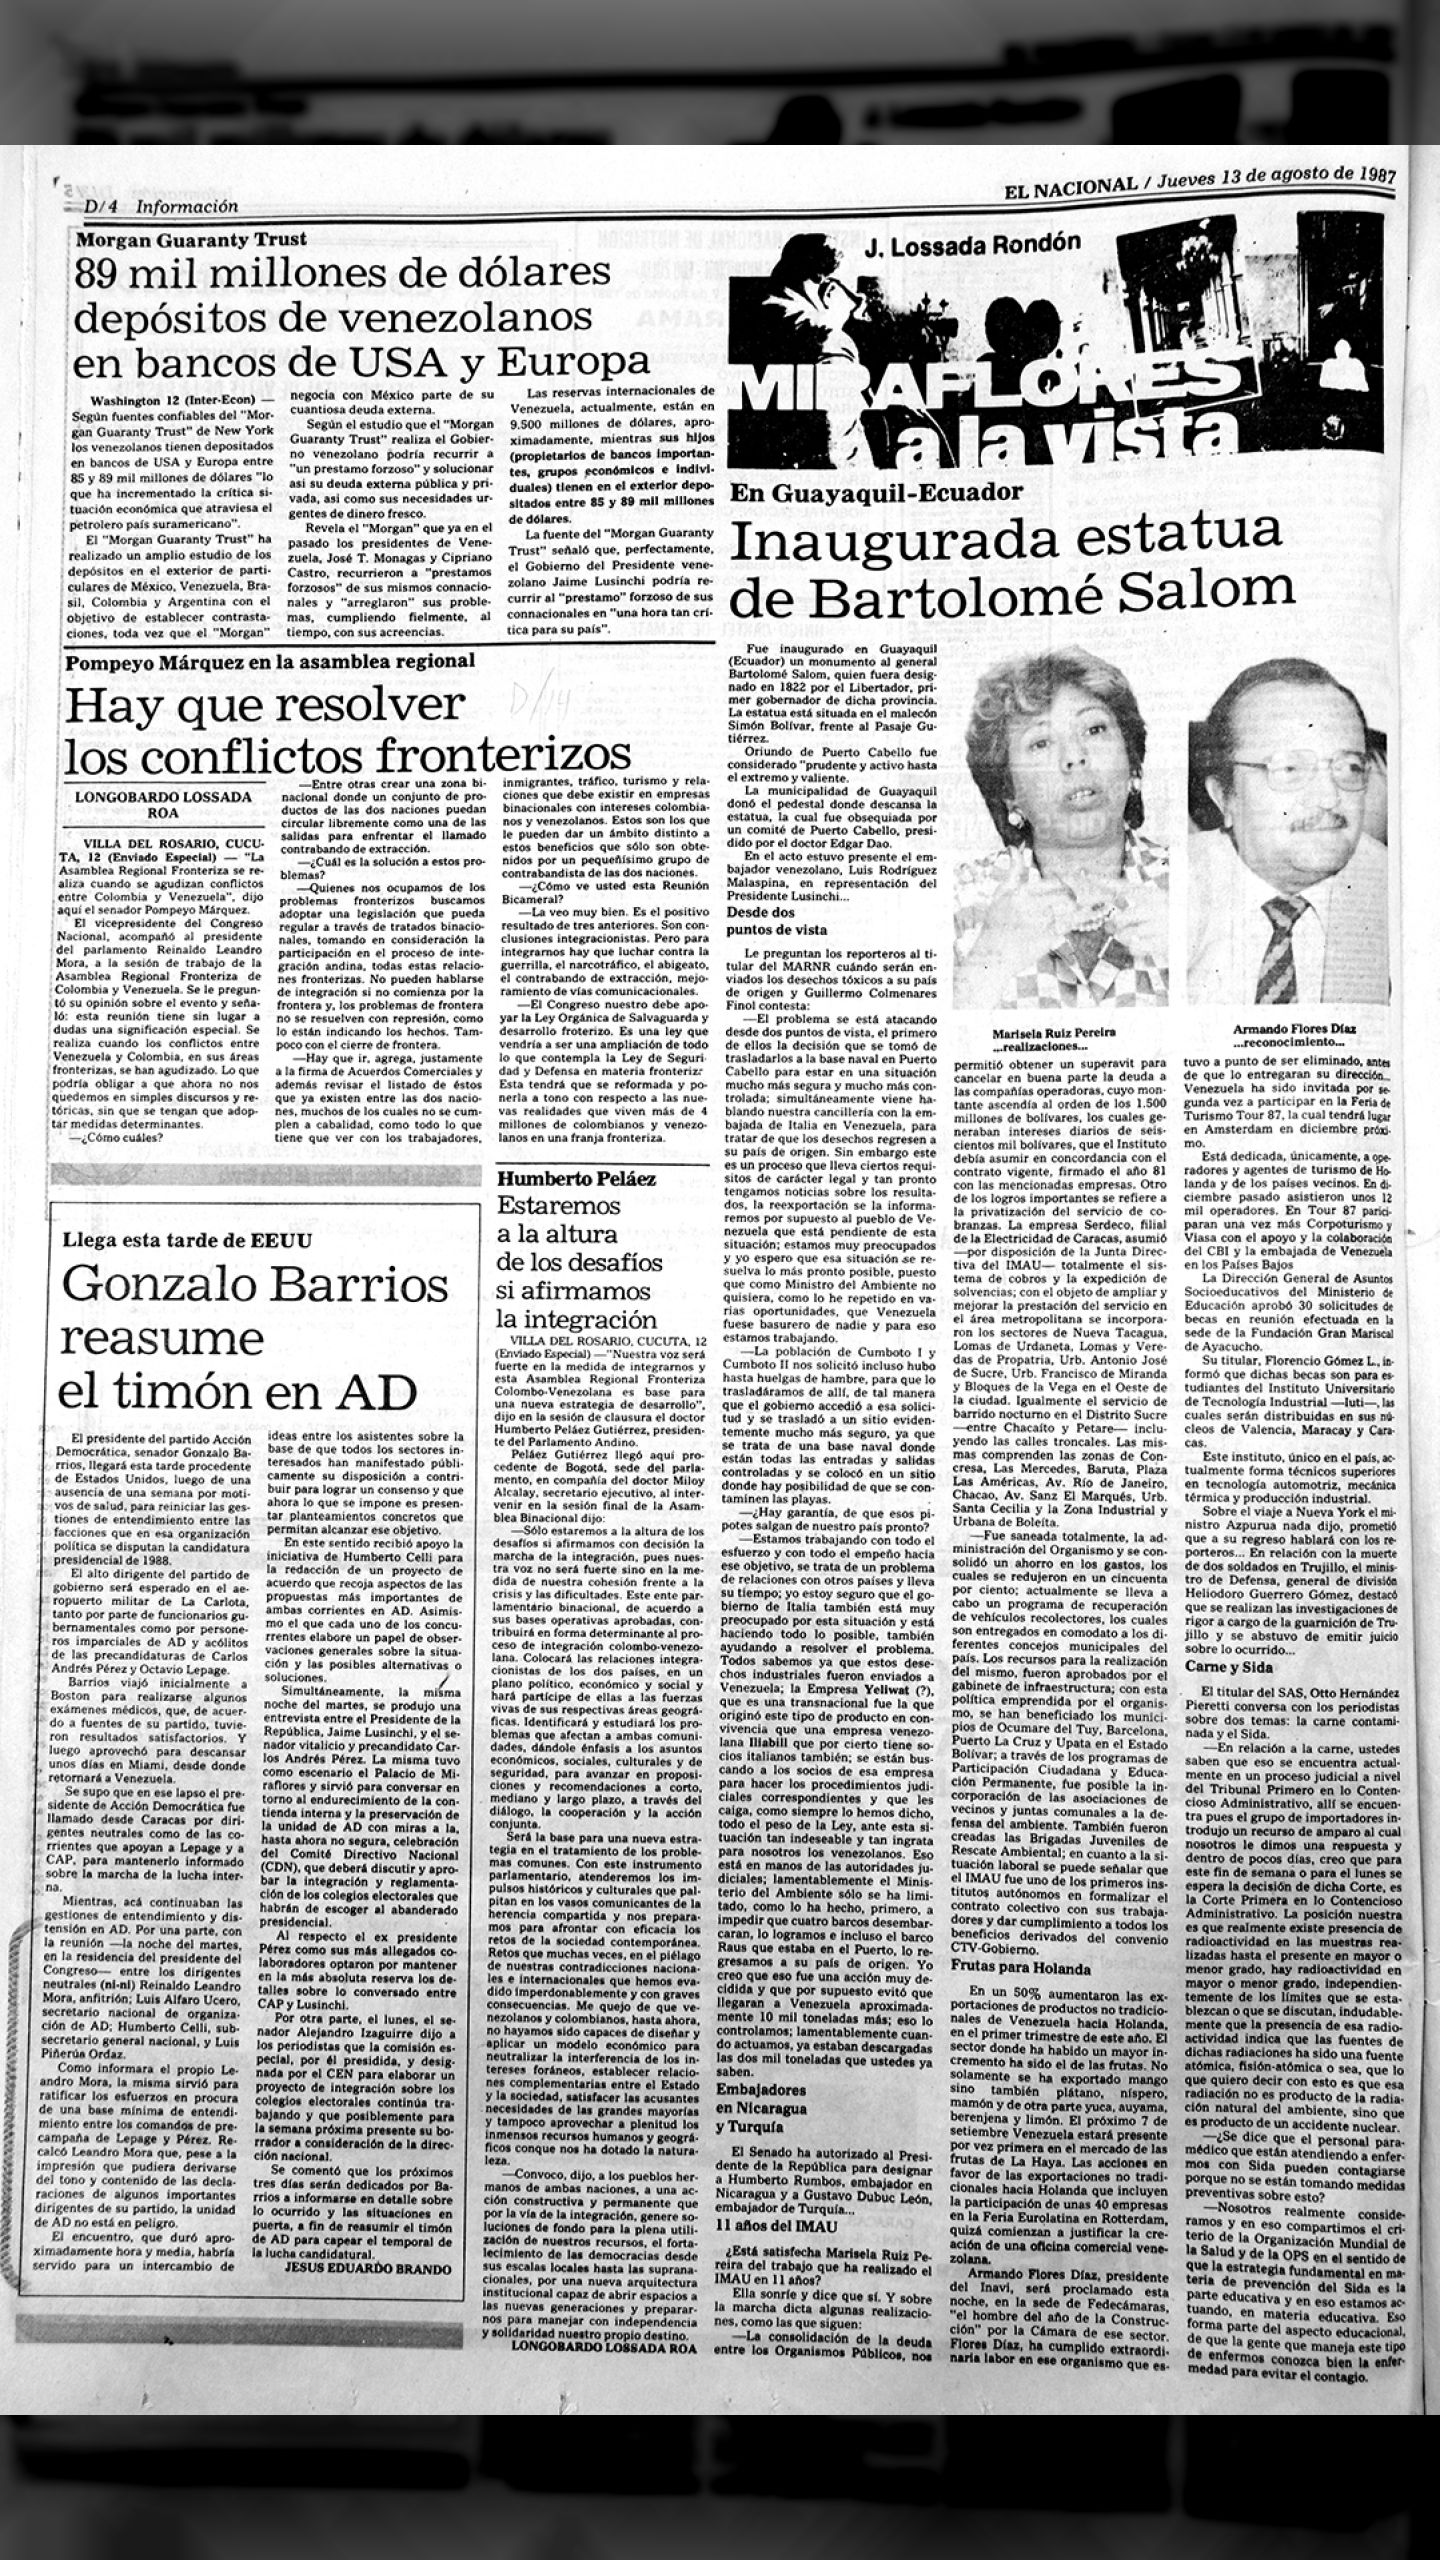 Depósitos venezolanos en el exterior 90.000 millones de dólares (El Nacional, 13 de agosto de 1987)